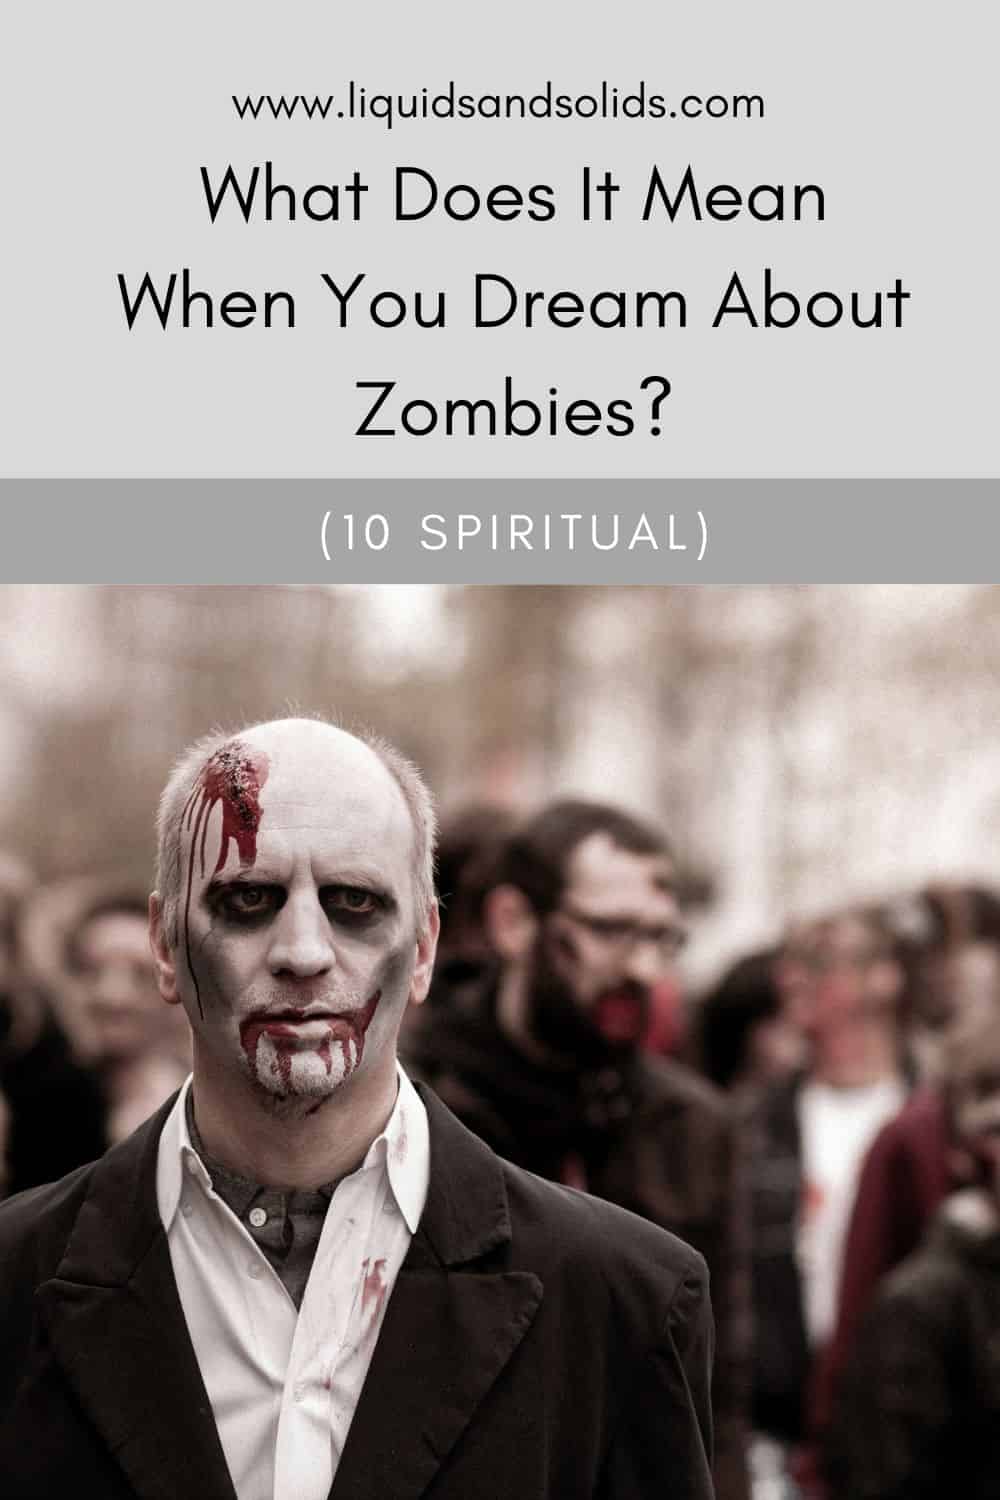  Ce que signifie rêver de zombies (10 significations spirituelles)